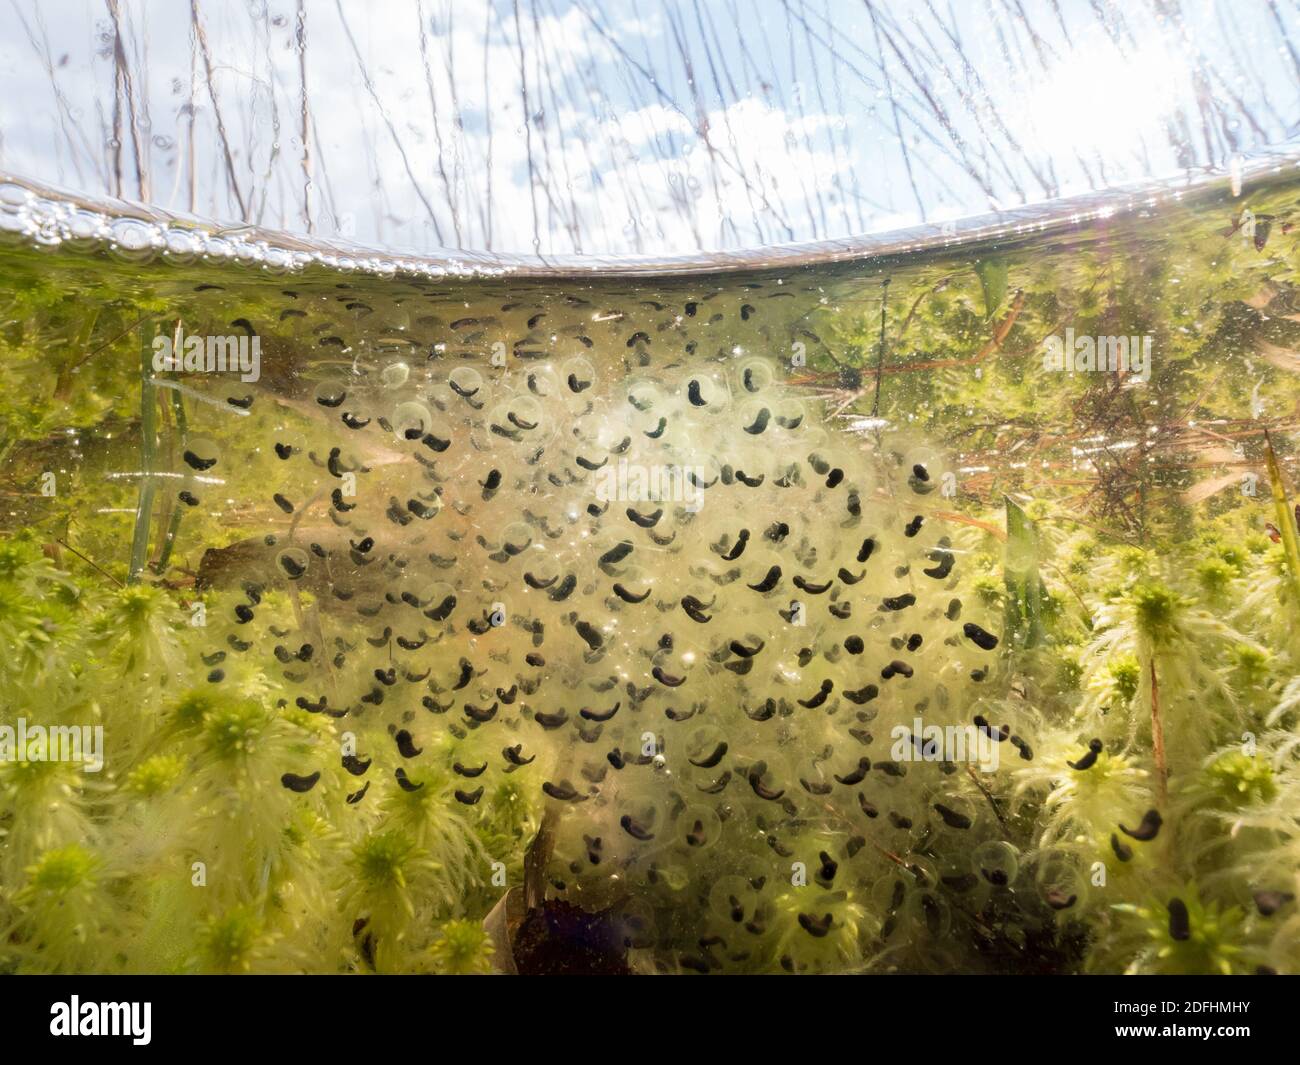 Moor frog eggs underwater Stock Photo